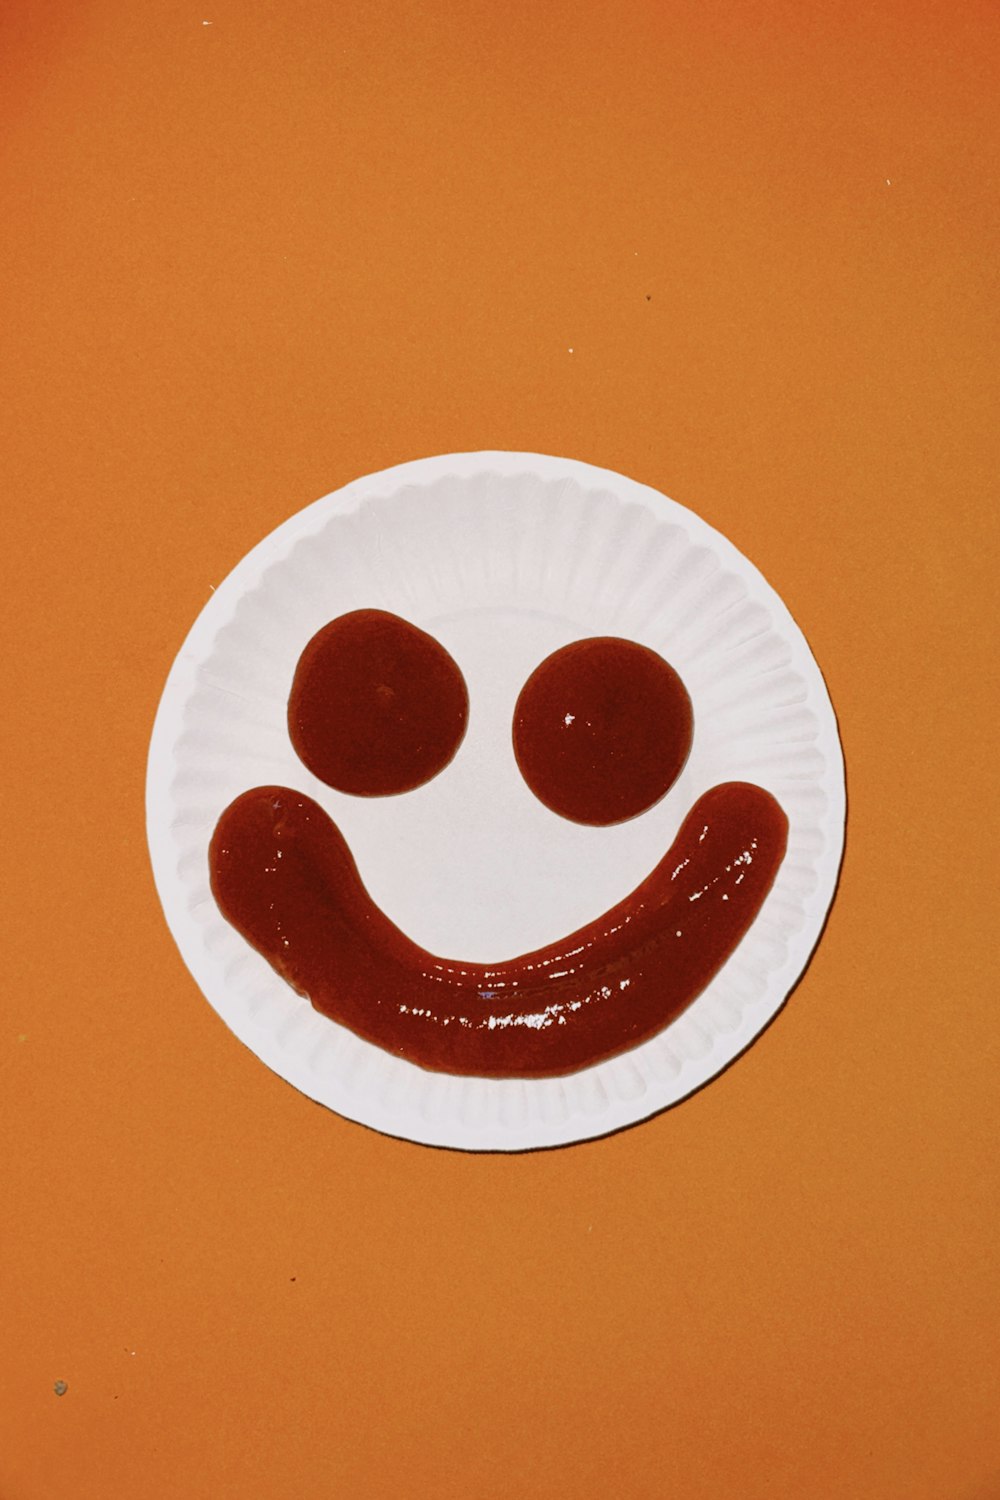 un plato de papel con una cara sonriente dibujada en él